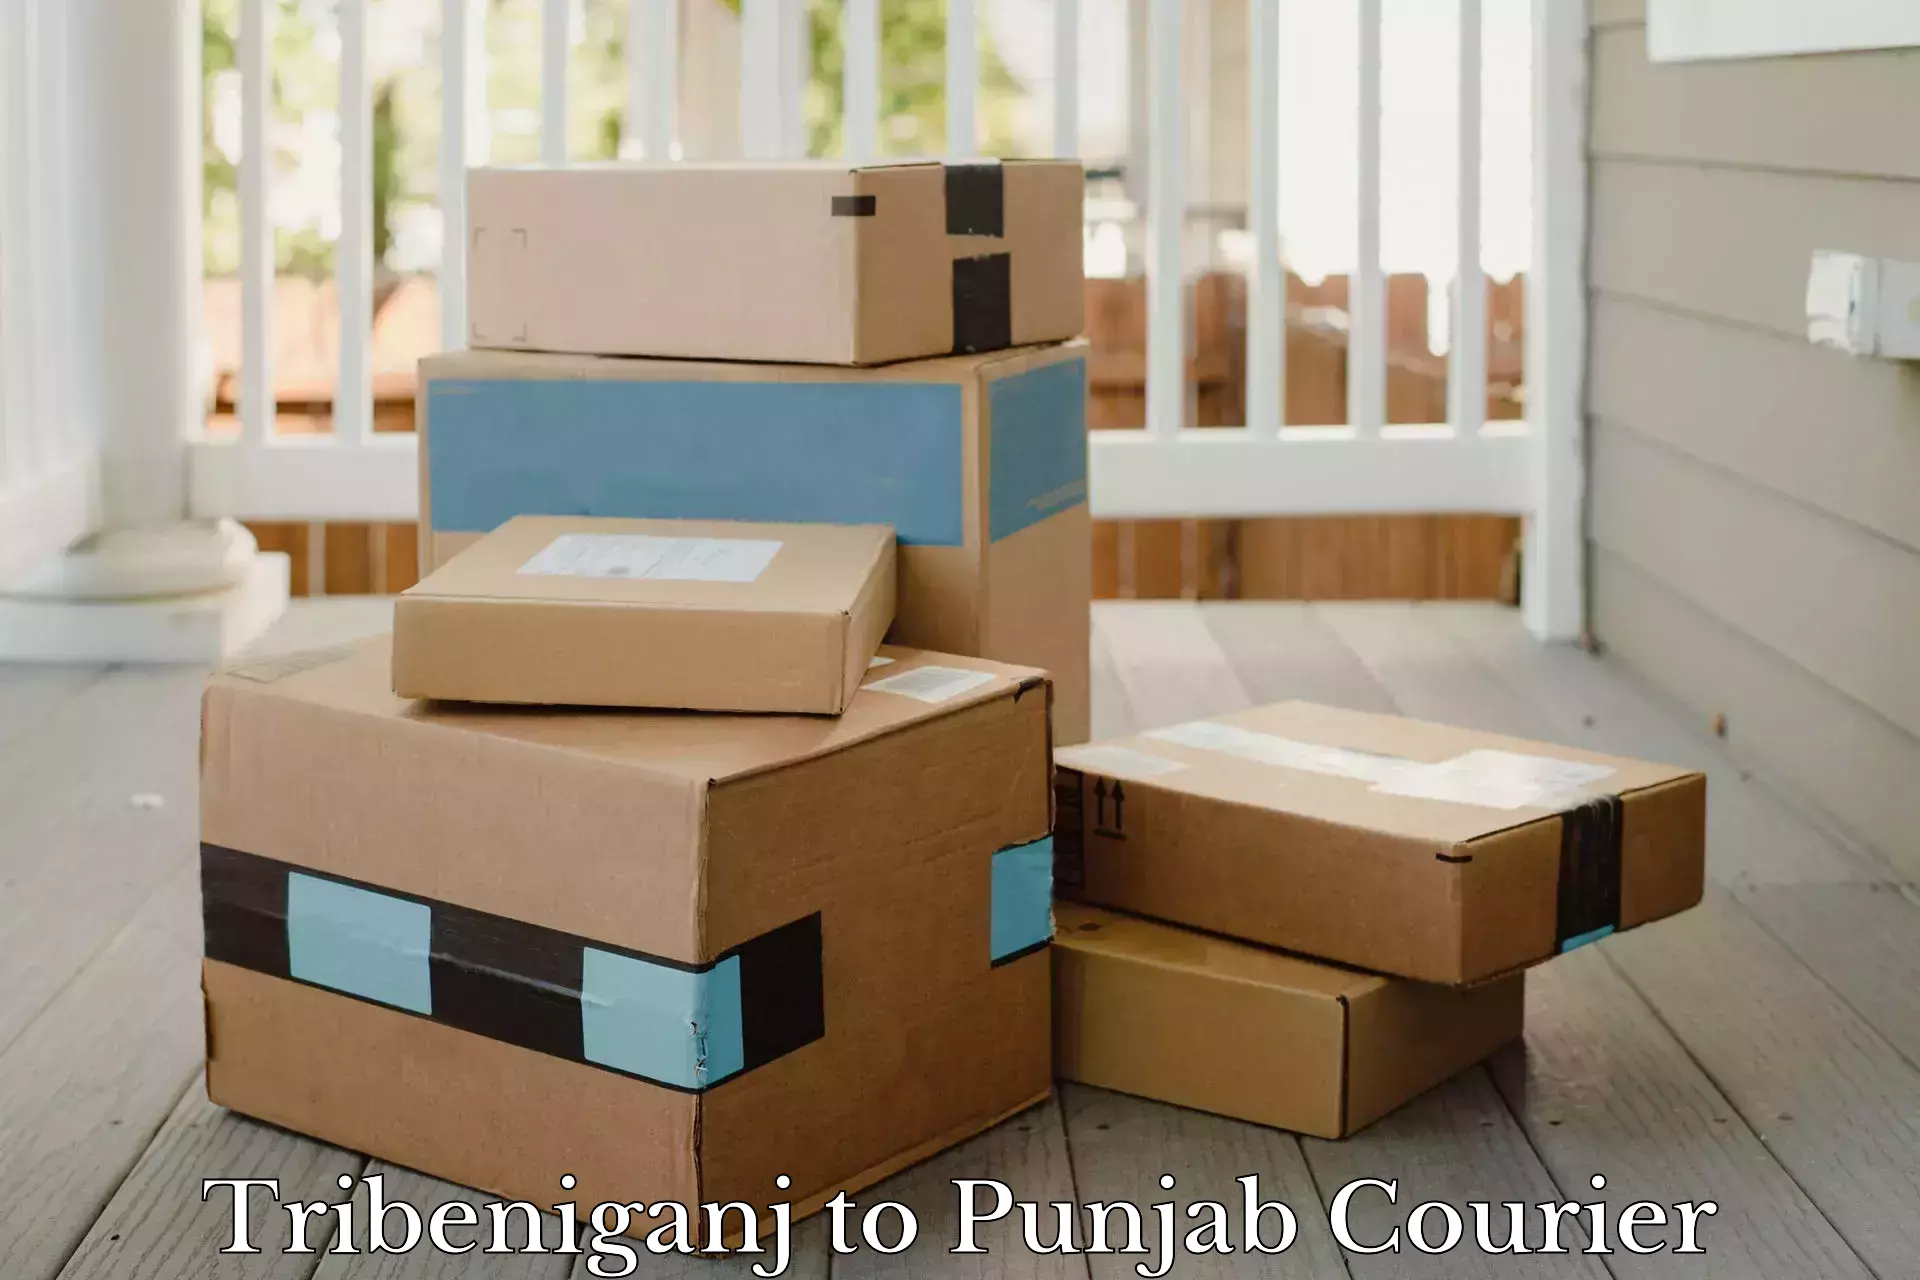 Personal parcel delivery Tribeniganj to Dinanagar